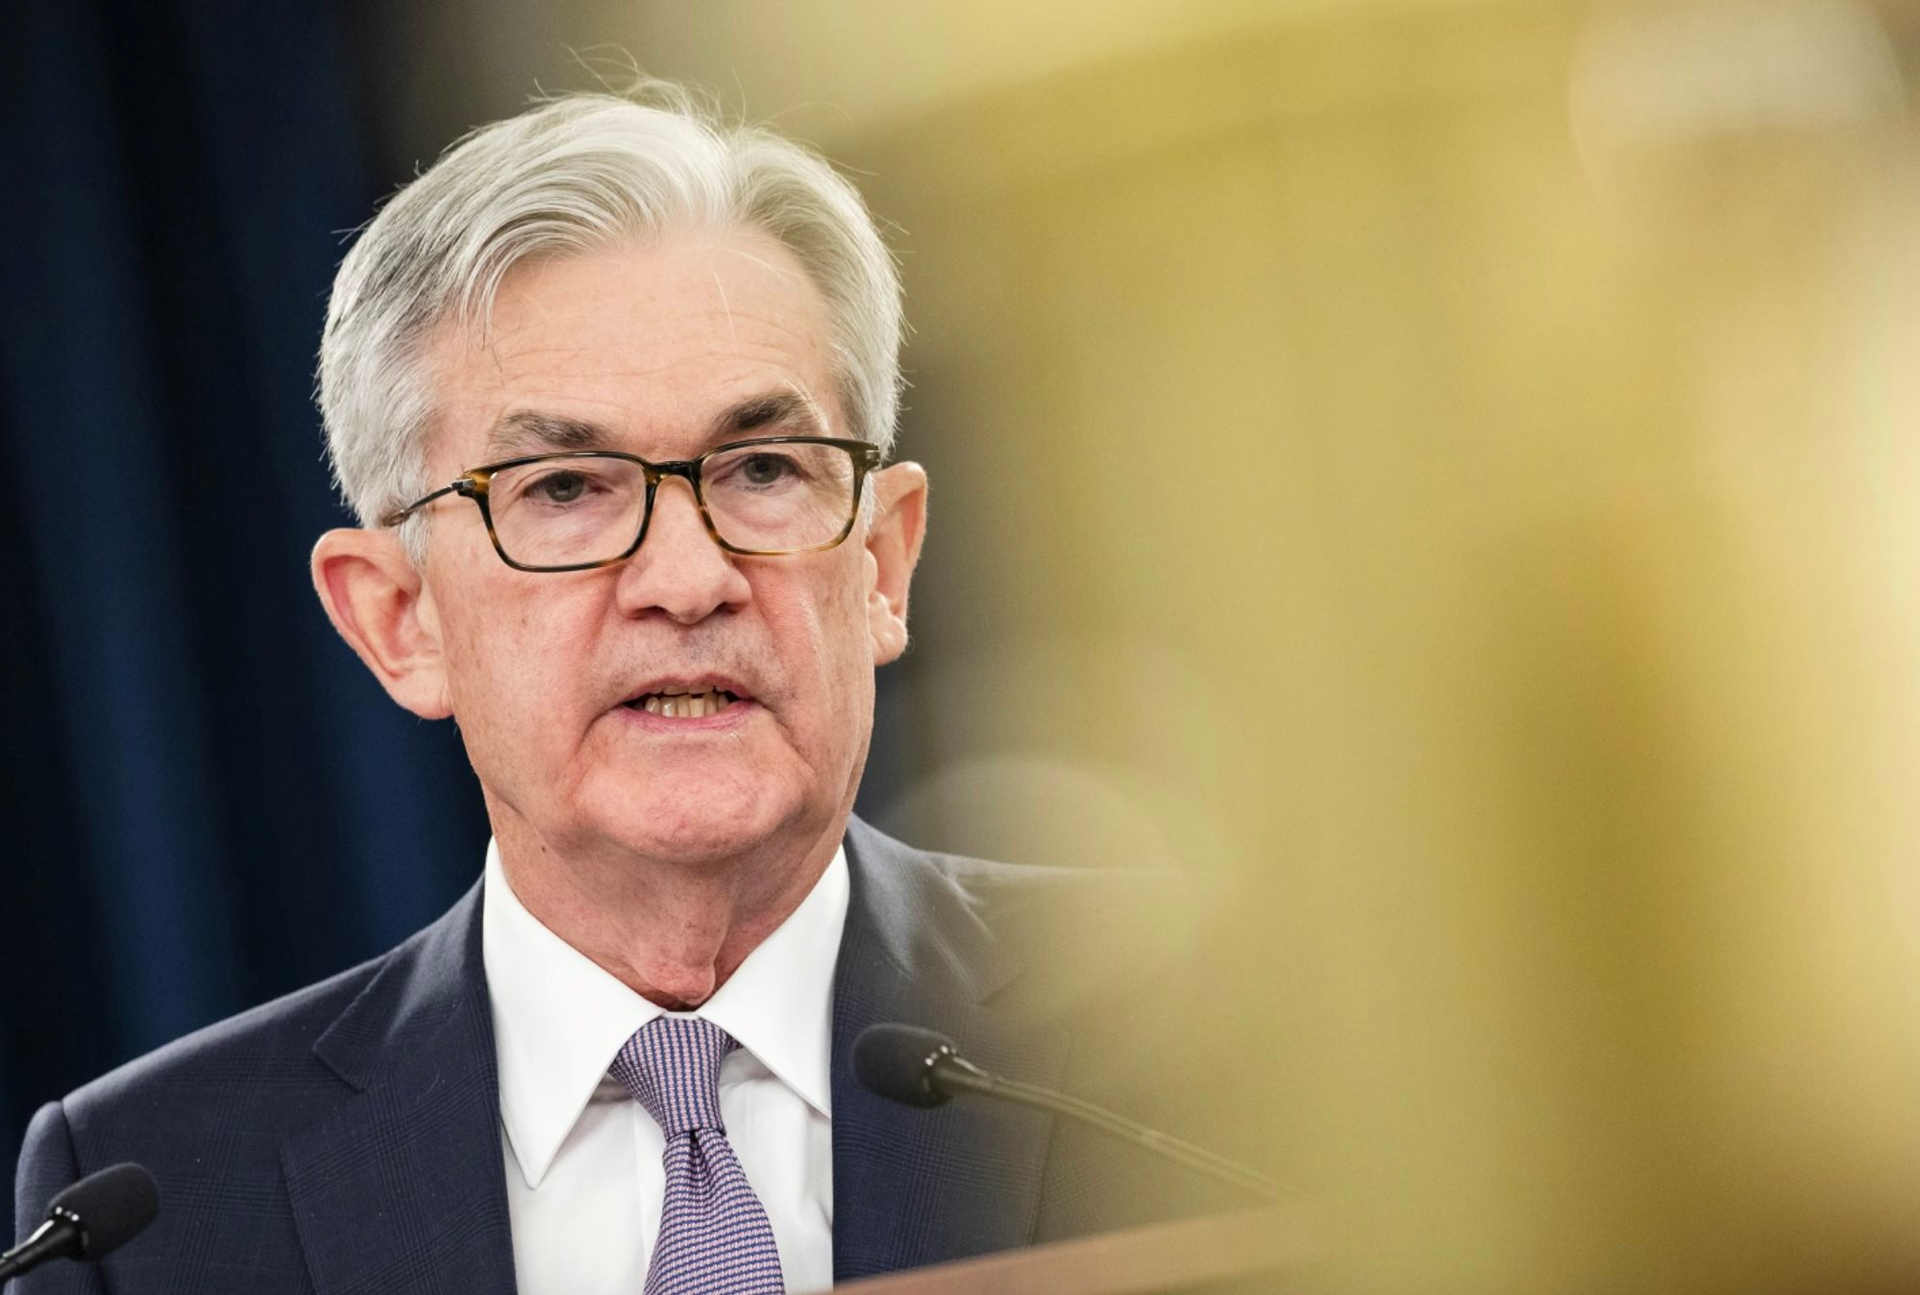 Biên bản cuộc họp tháng 3 được công bố: Fed quyết định tăng lãi suất dù biết rõ rủi ro suy thoái đang cận kề 